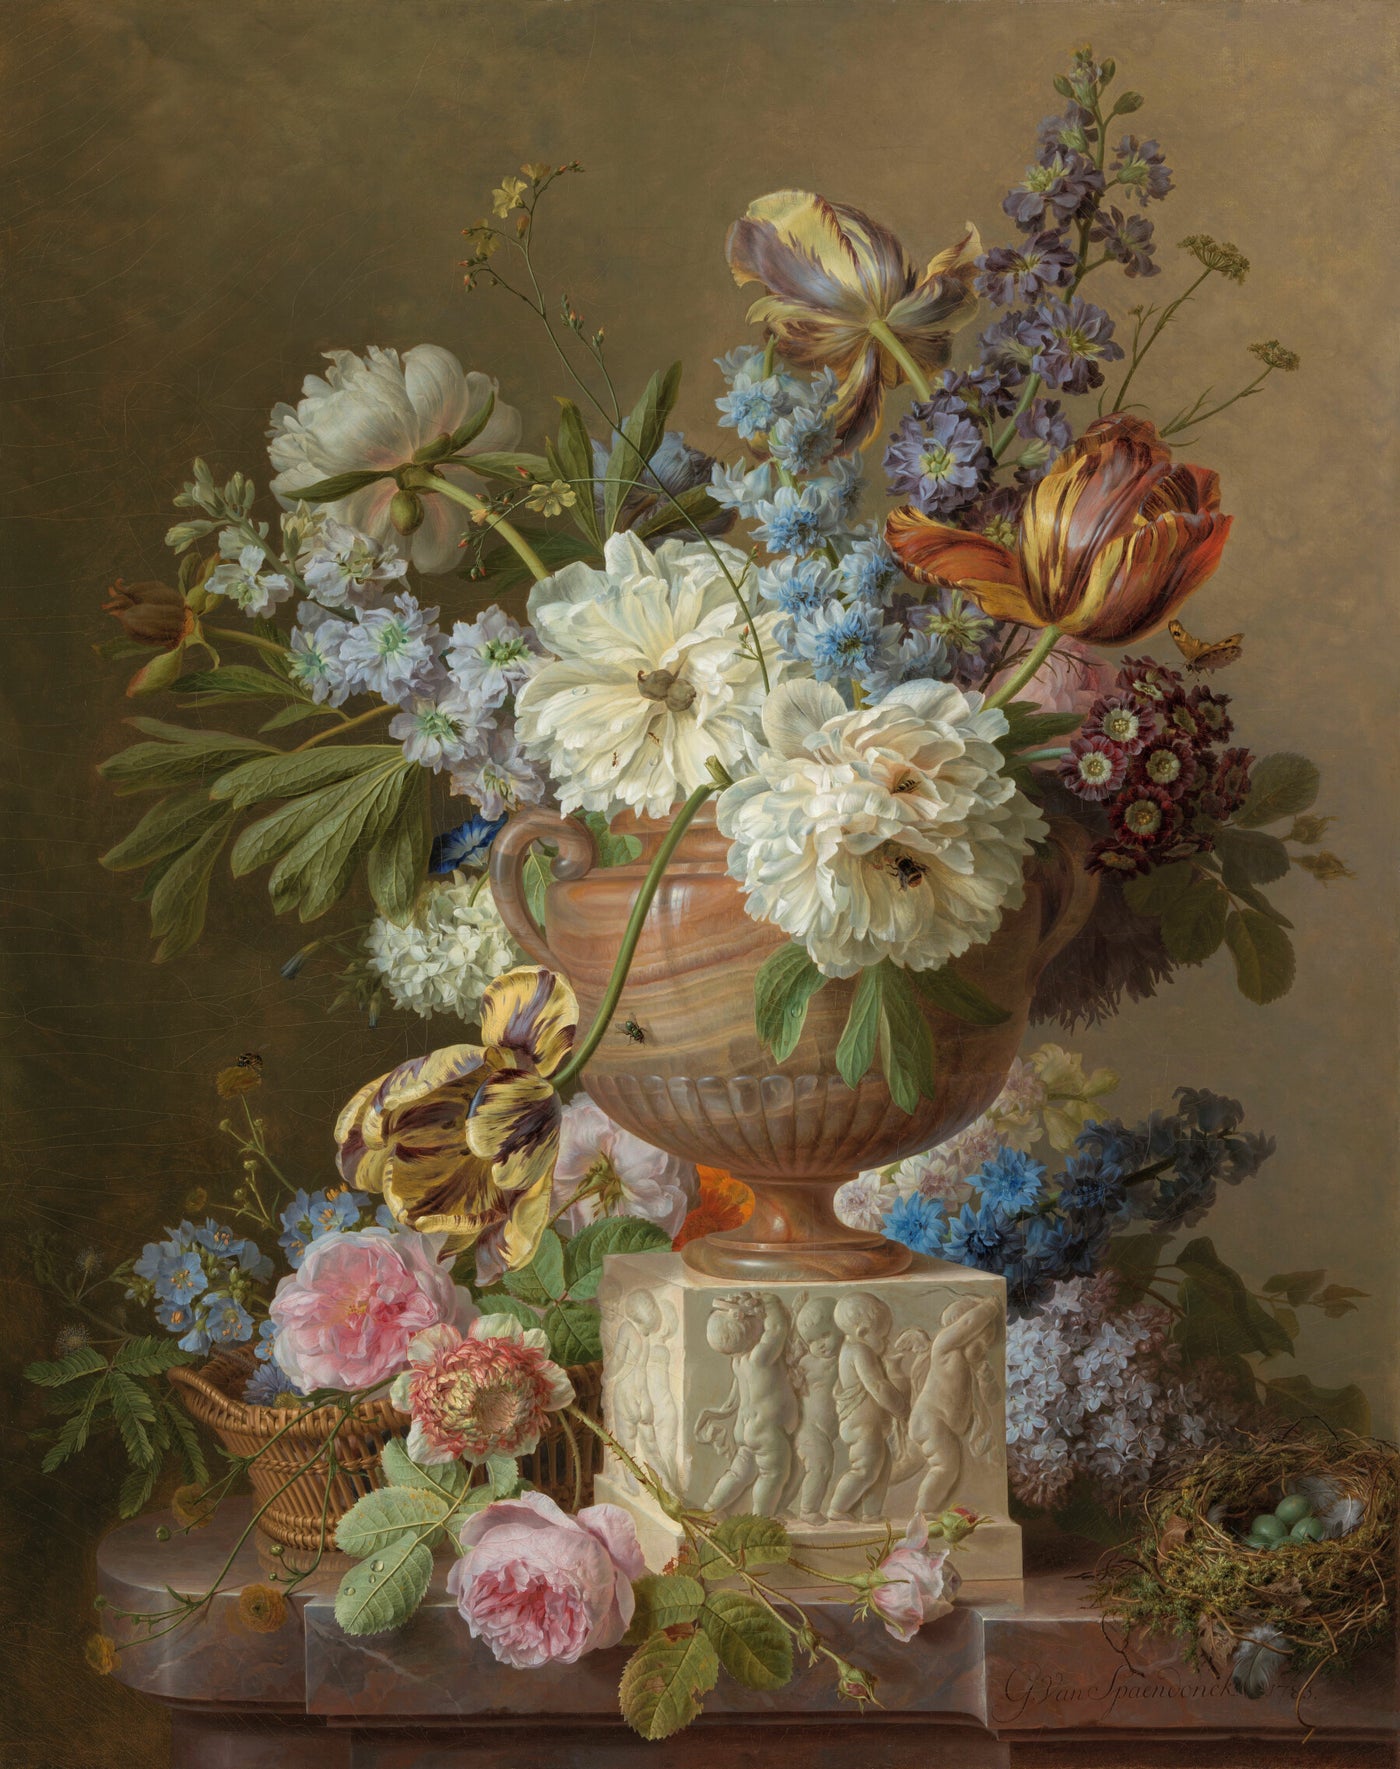 Stilleben mit Blumen und Alabastervase, Gerard van Spaendonck, 1783